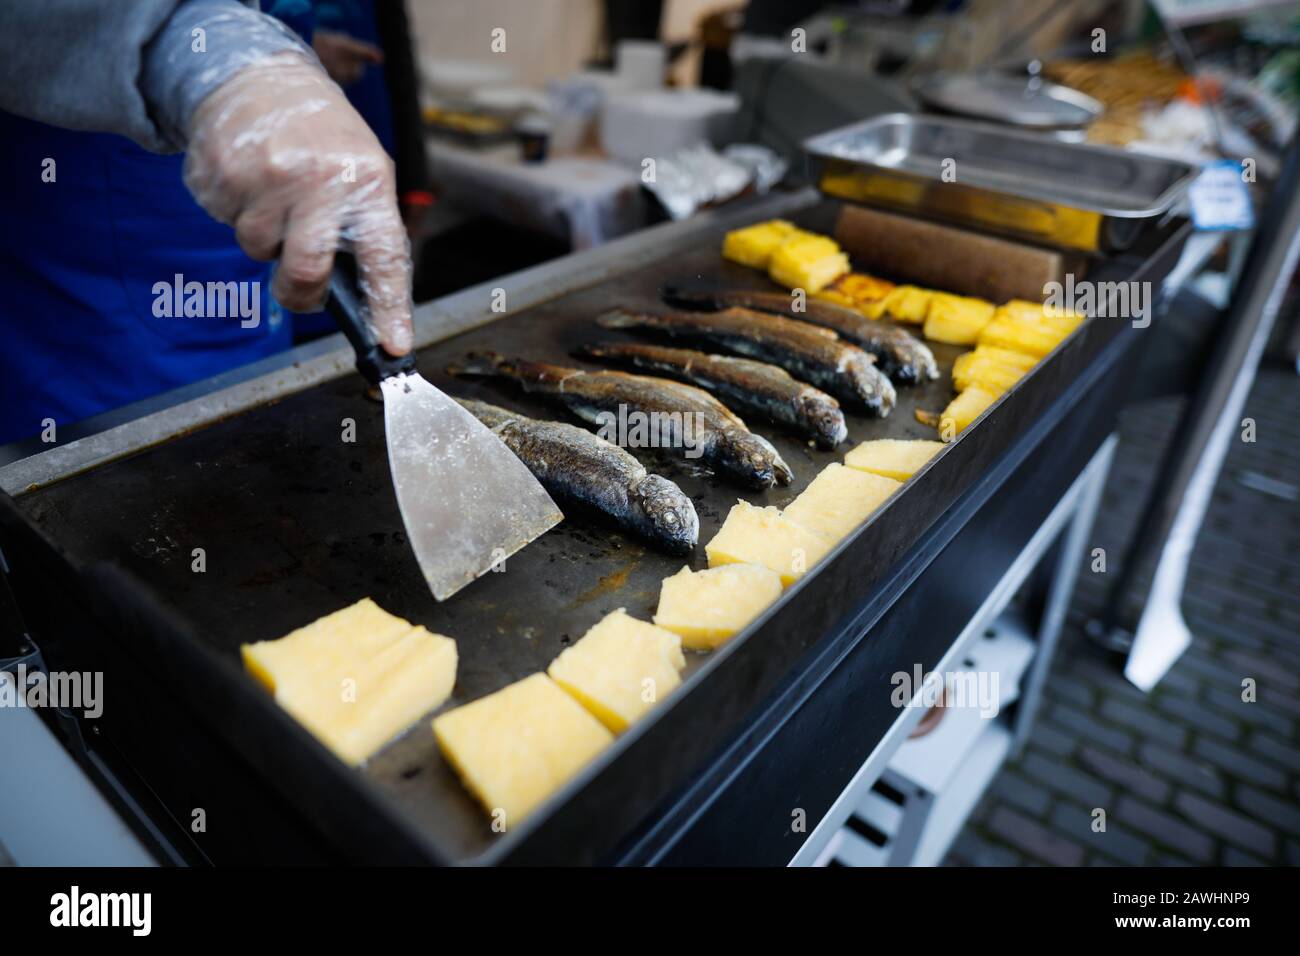 Profondità di campo poco profonda (fuoco selettivo) immagine con un uomo che cucina trote pesce e polenta su una stufa all'aperto in una giornata fredda. Foto Stock